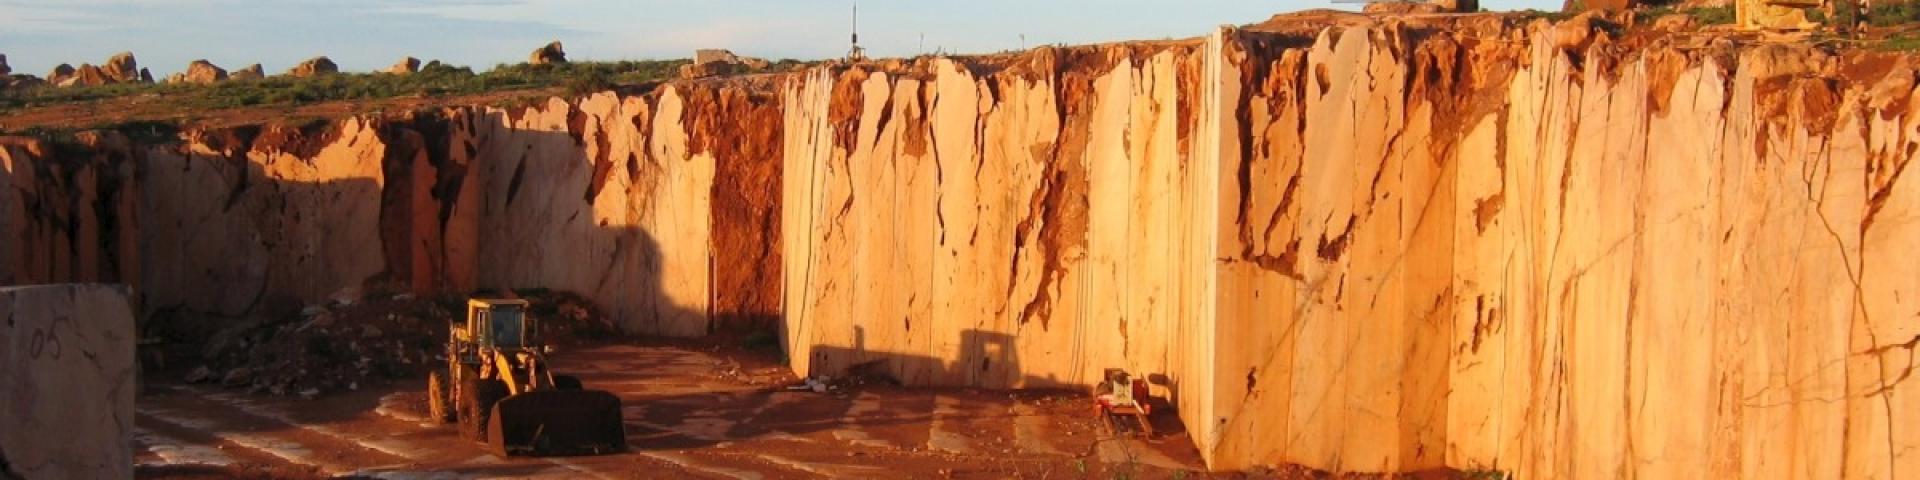 L'exploitation de calcaires marbriers de Krystal, lors d'une mission RMI en Mars 2006 pour évaluer l'état et le potentiel des ressources algériennes (Algérie, 2006).